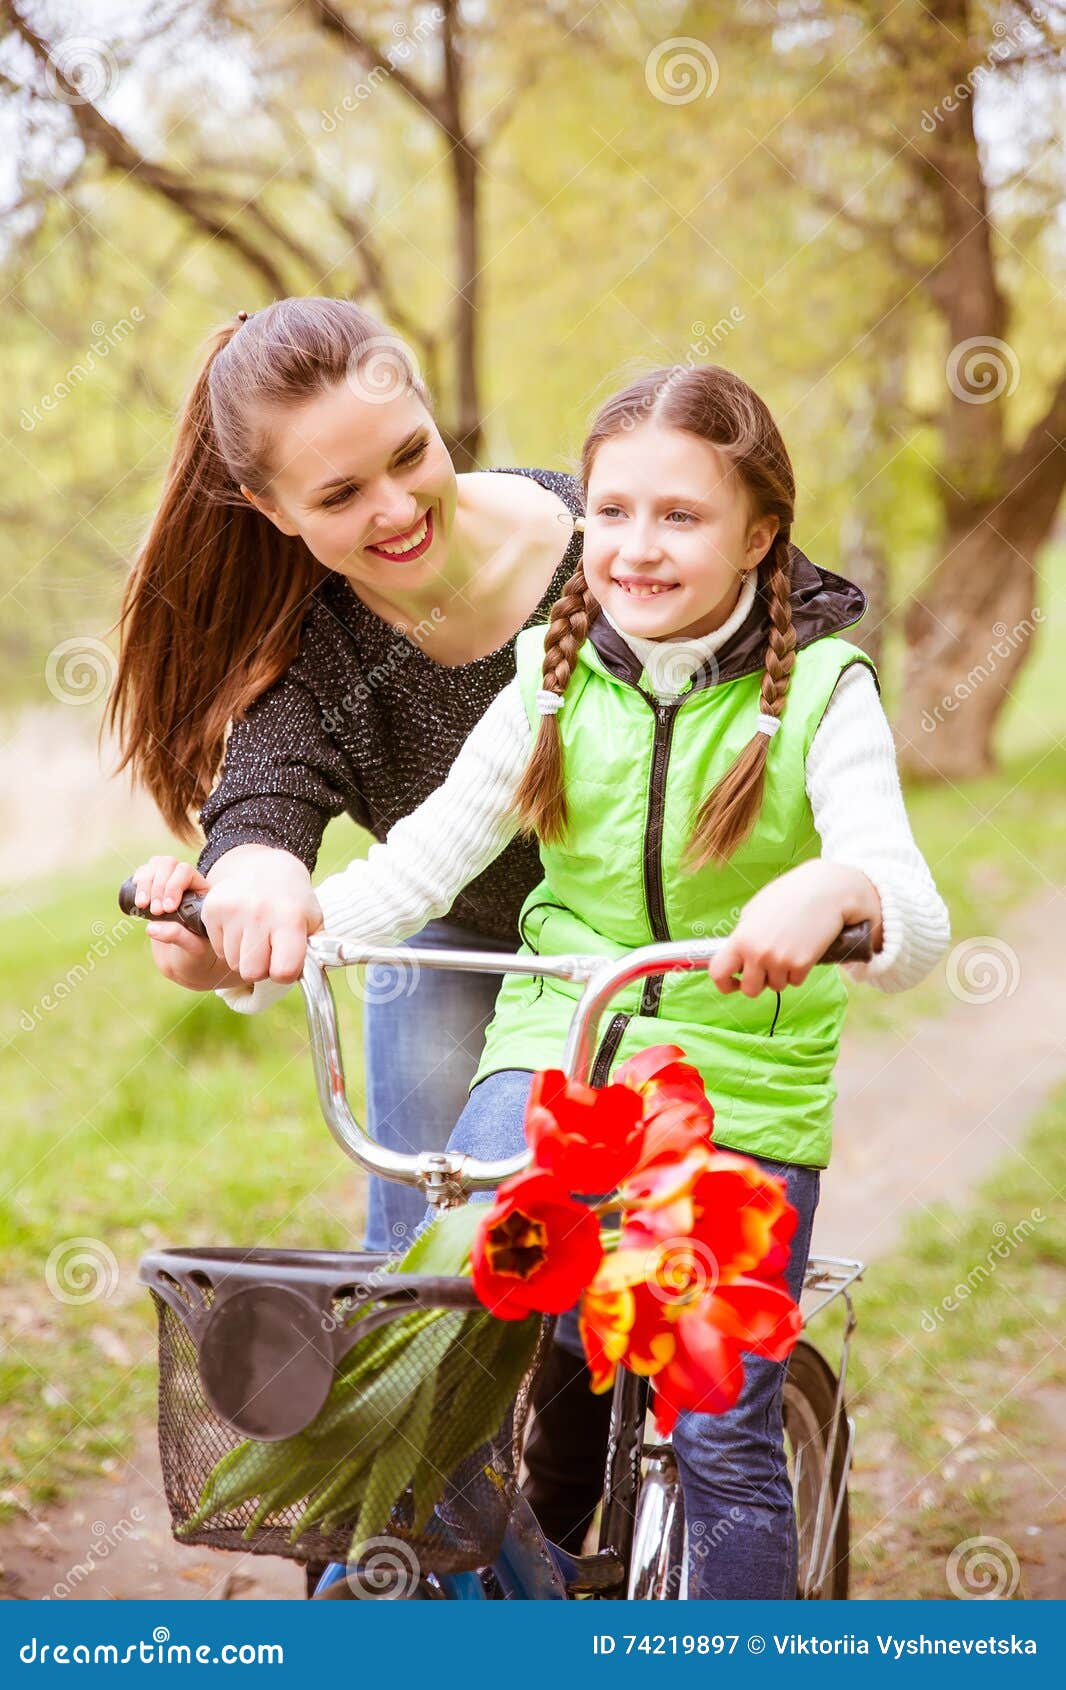 愉快的获得乐趣，骑自行车和显示赞许的母亲和女儿 库存照片. 图片 包括有 健康, 查找, 童年, 母亲, 骑自行车者 - 58347866